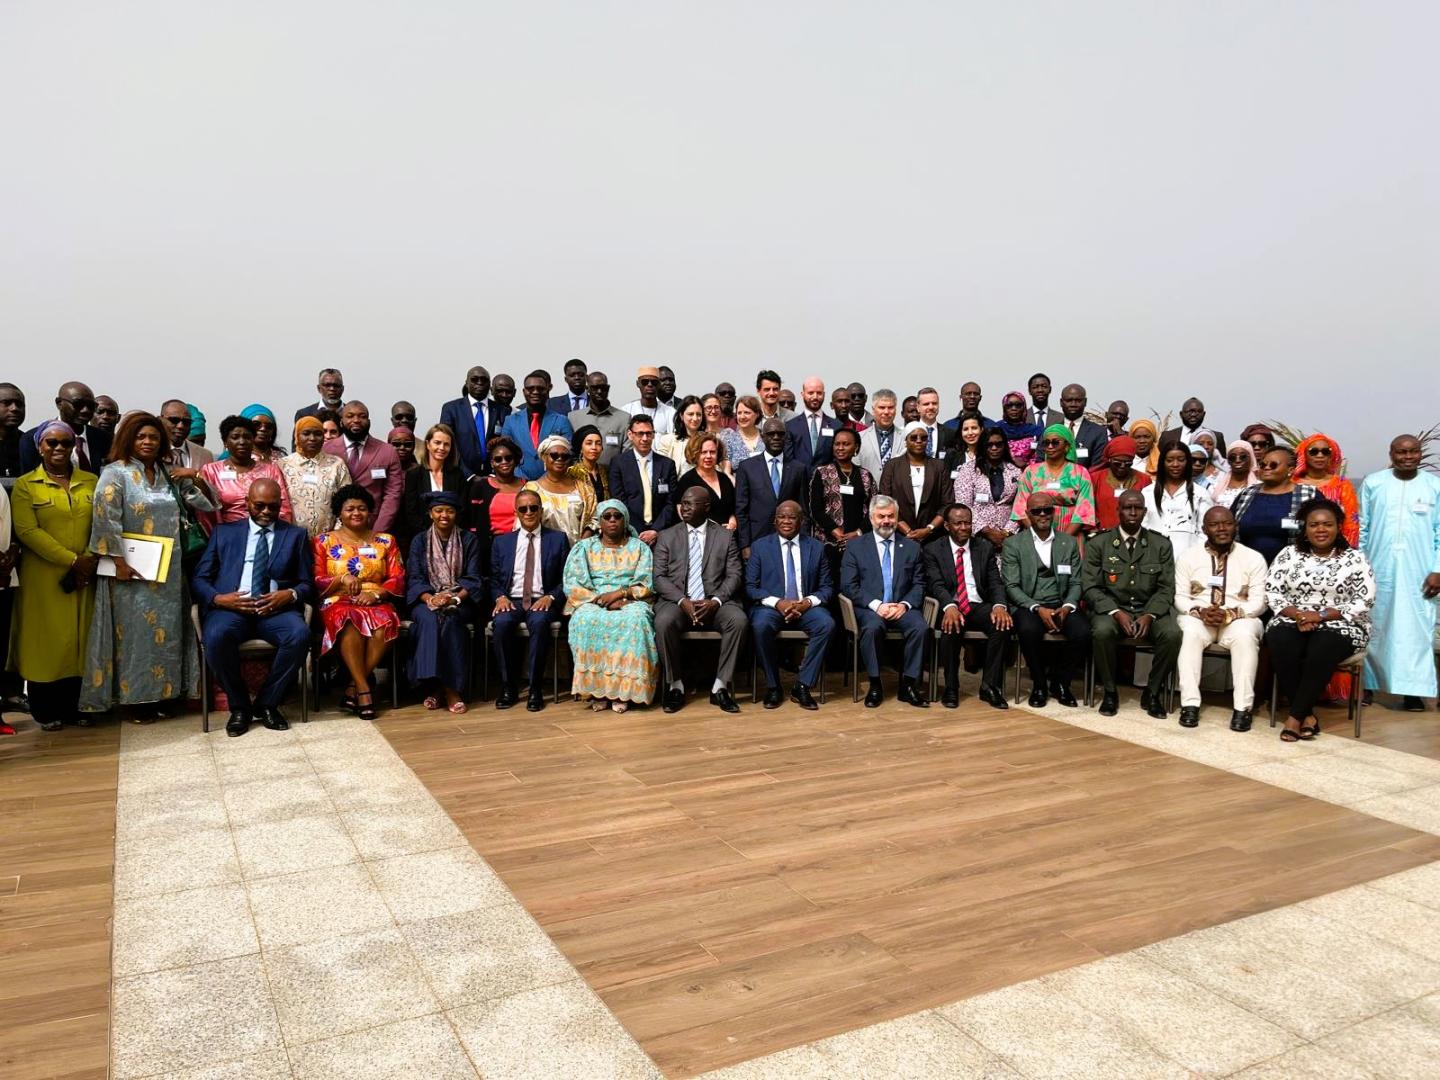 Sénégal, réforme du secteur pharmaceutique